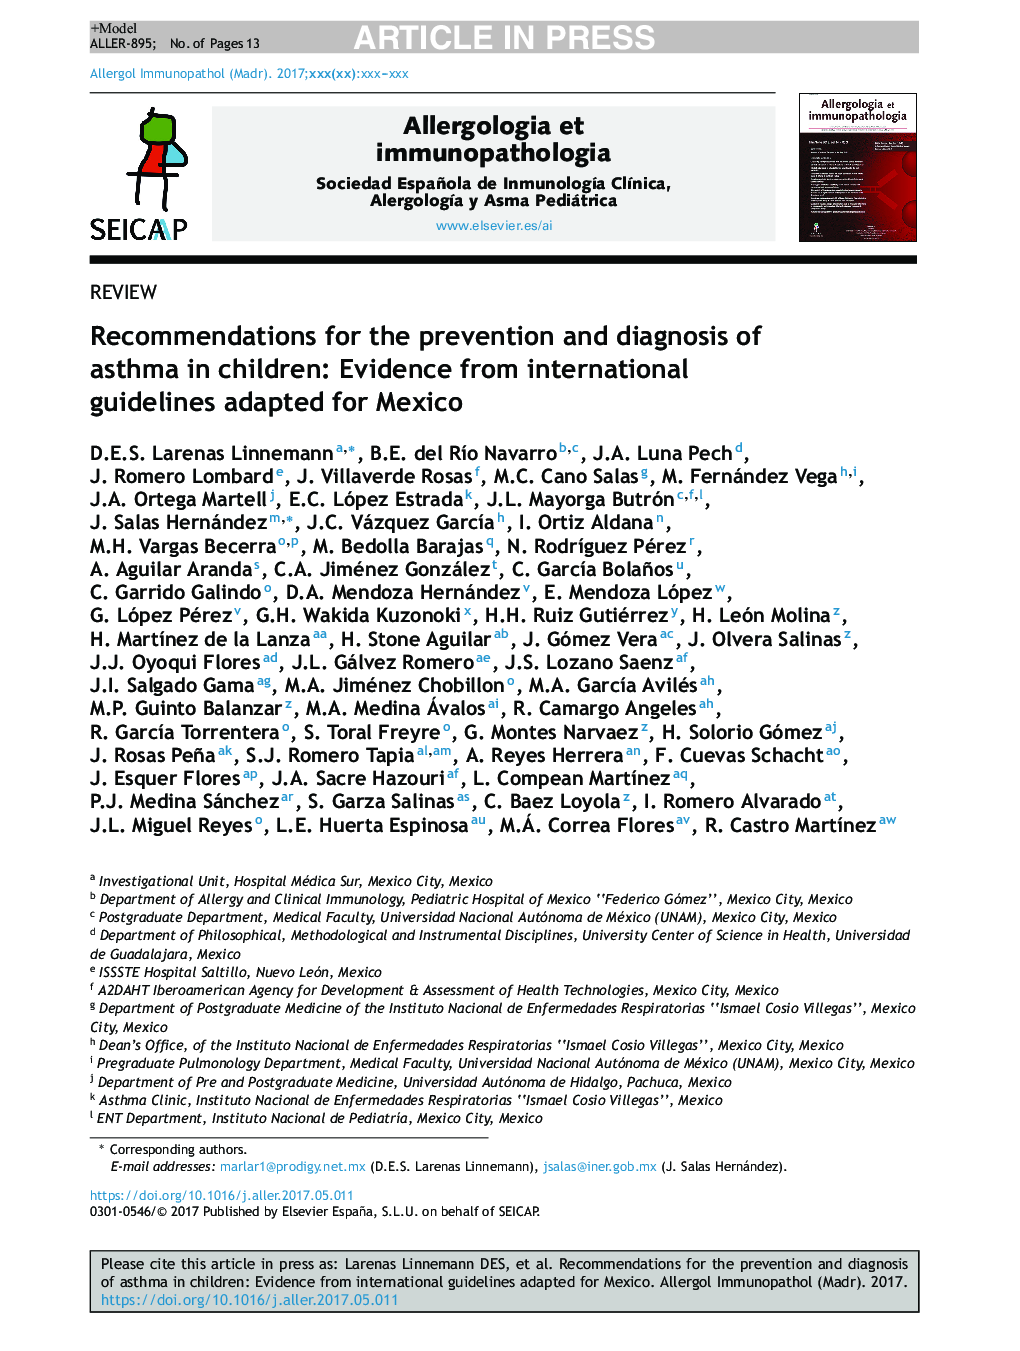 توصیه های پیشگیری و تشخیص آسم در کودکان: شواهد از دستورالعمل های بین المللی برای مکزیک سازگار است 